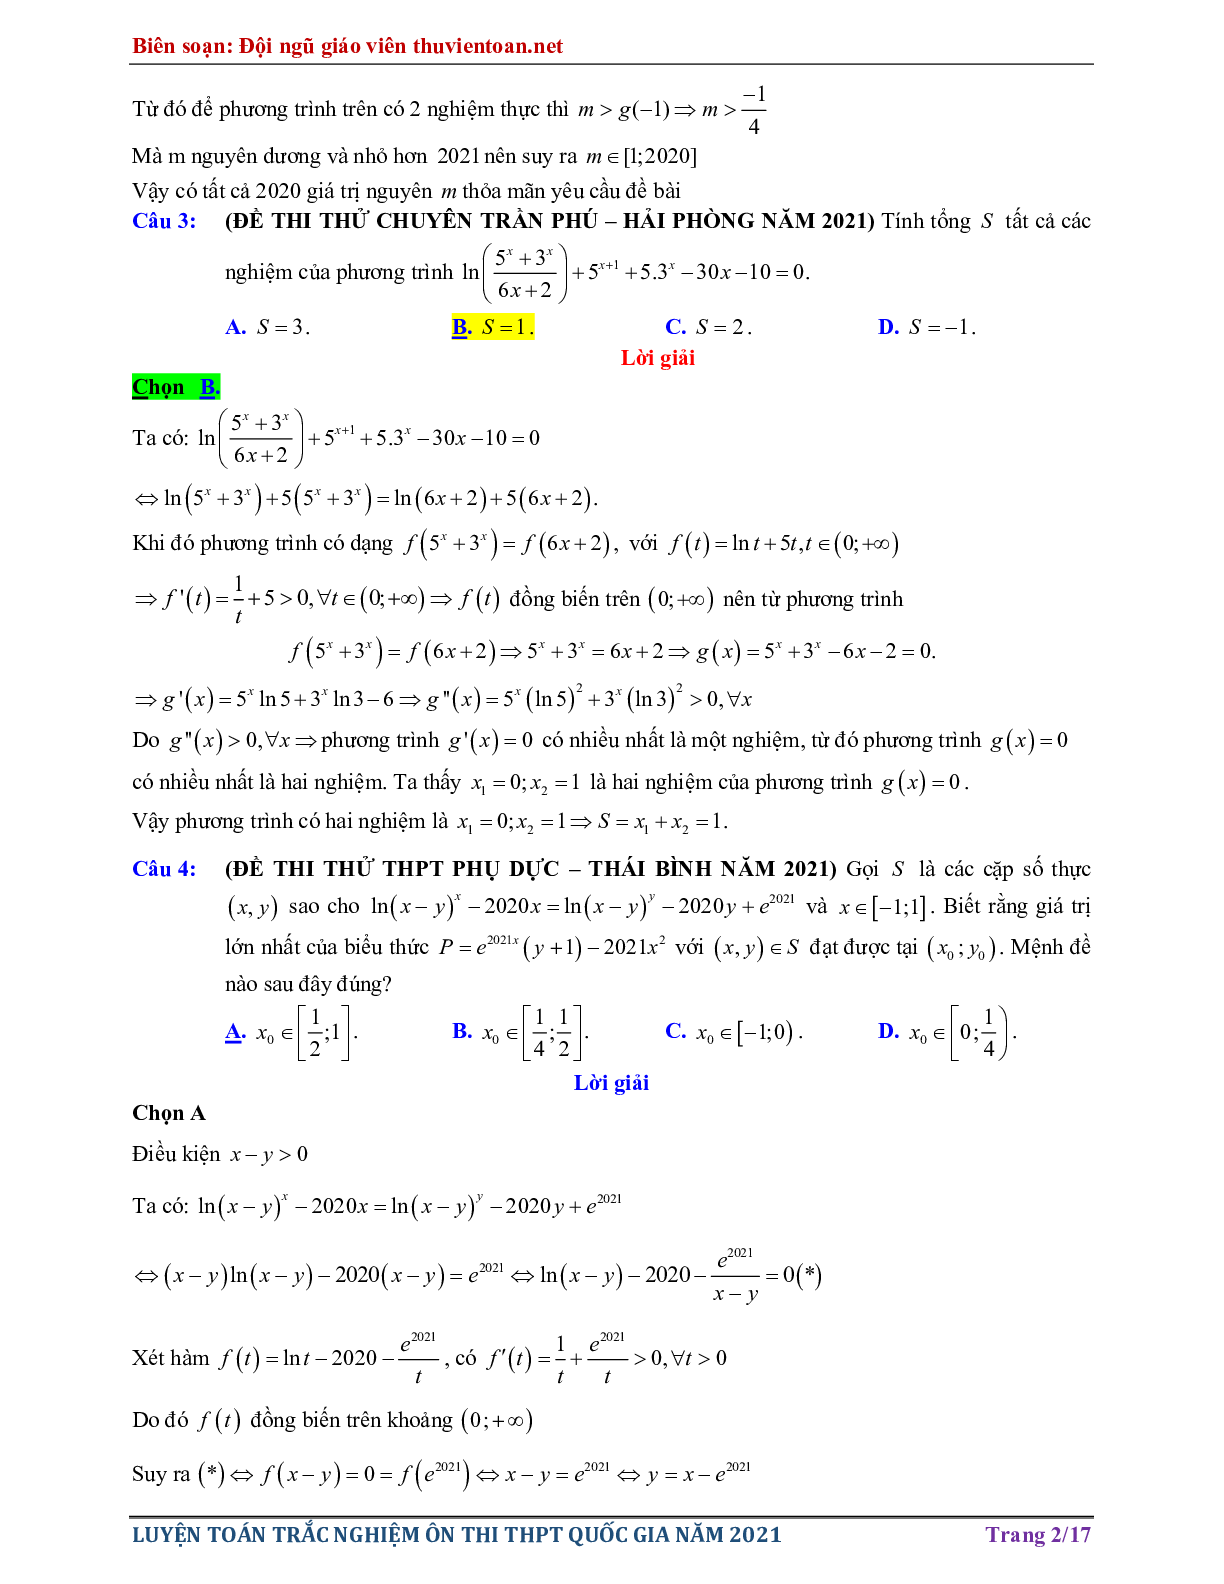 Vận dụng cao - Phương trình Mũ - Logarit trong đề thi thử THPTQG năm 2021 có lời giải chi tiết (trang 2)